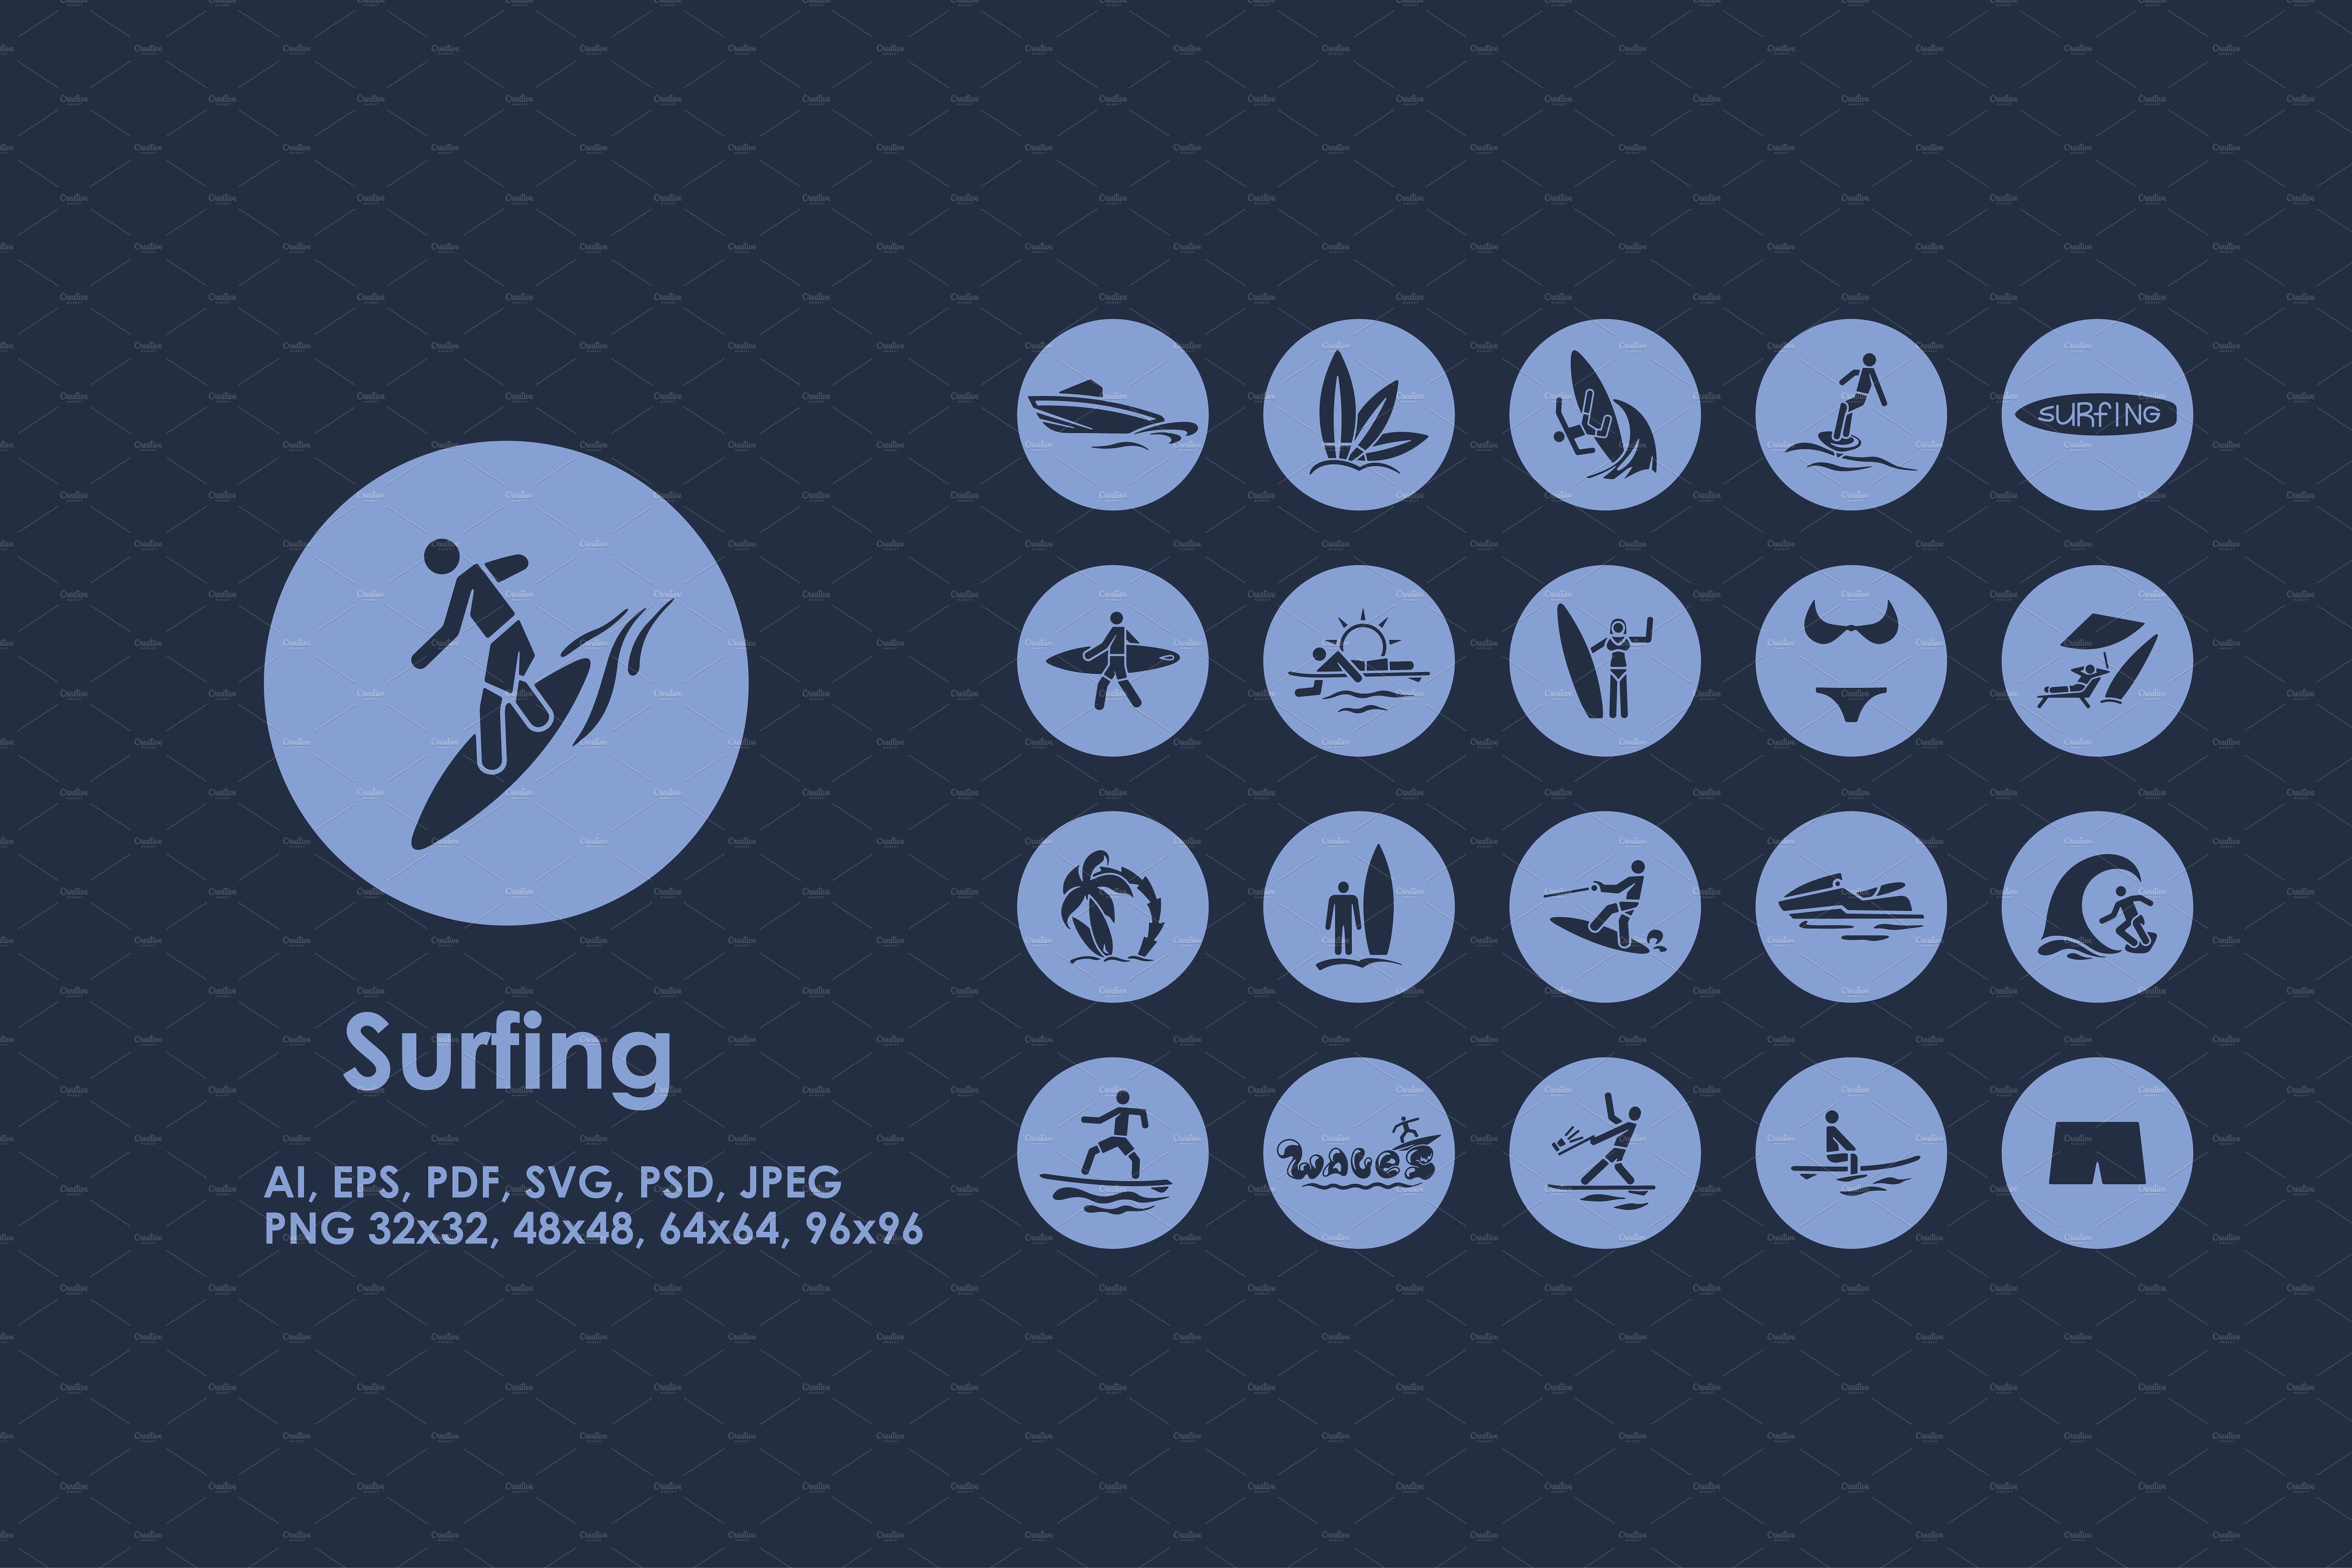 冲浪主题图标 Surfing icons #91205